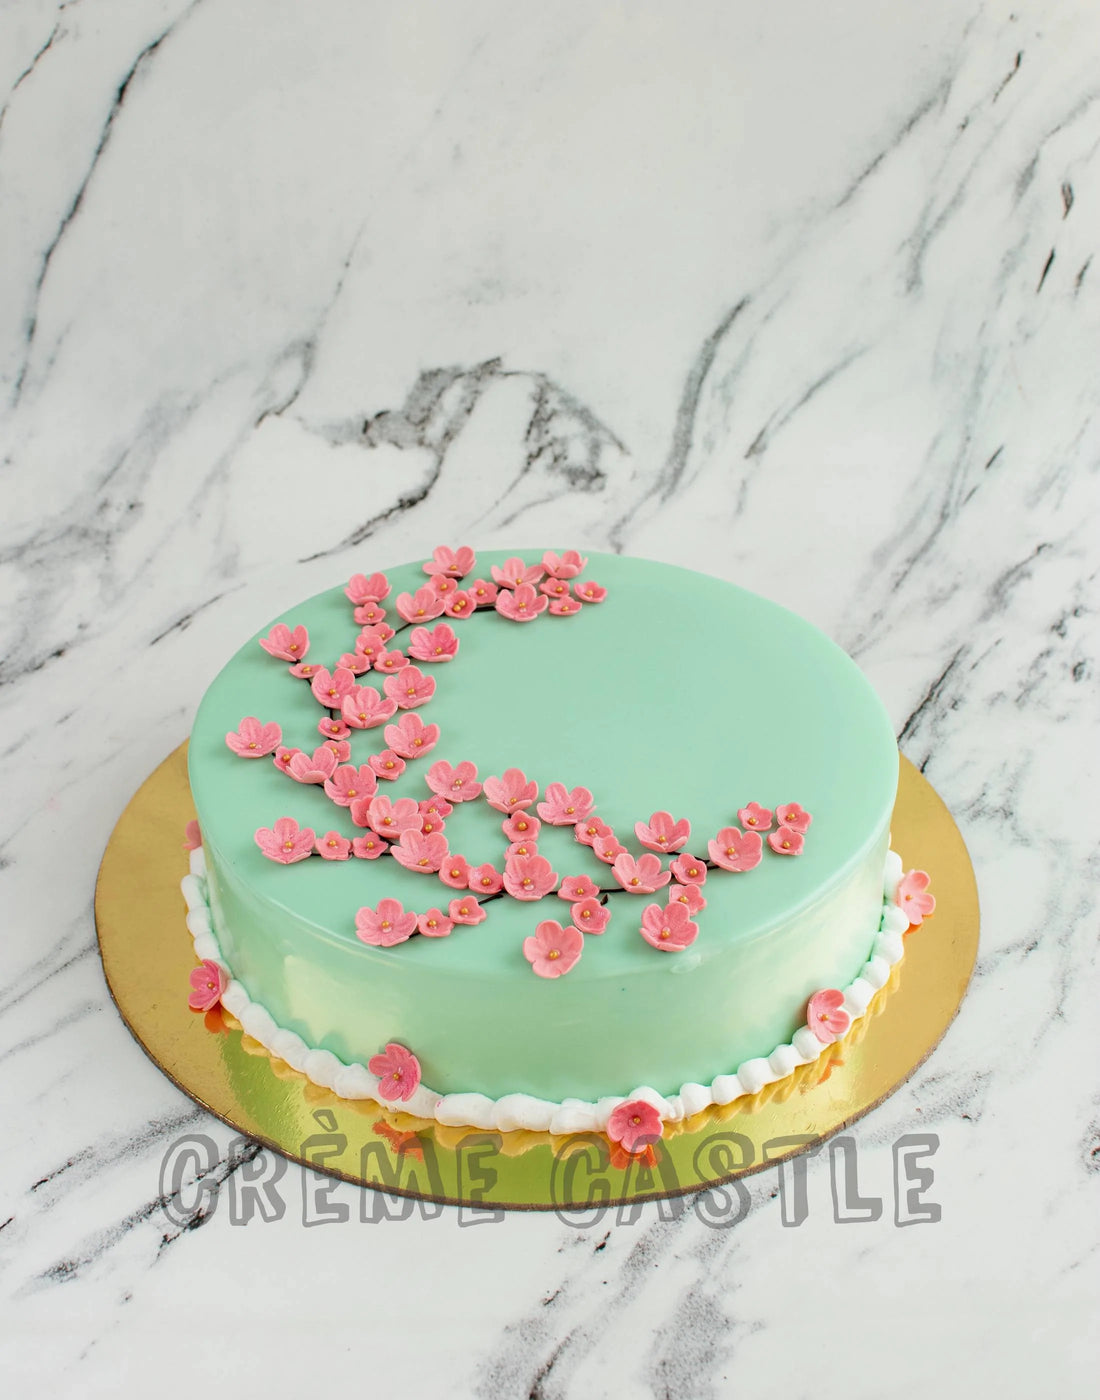 Cherry Blossom Designs Cake. Cake Designs for Wife. Noida & Gurgaon